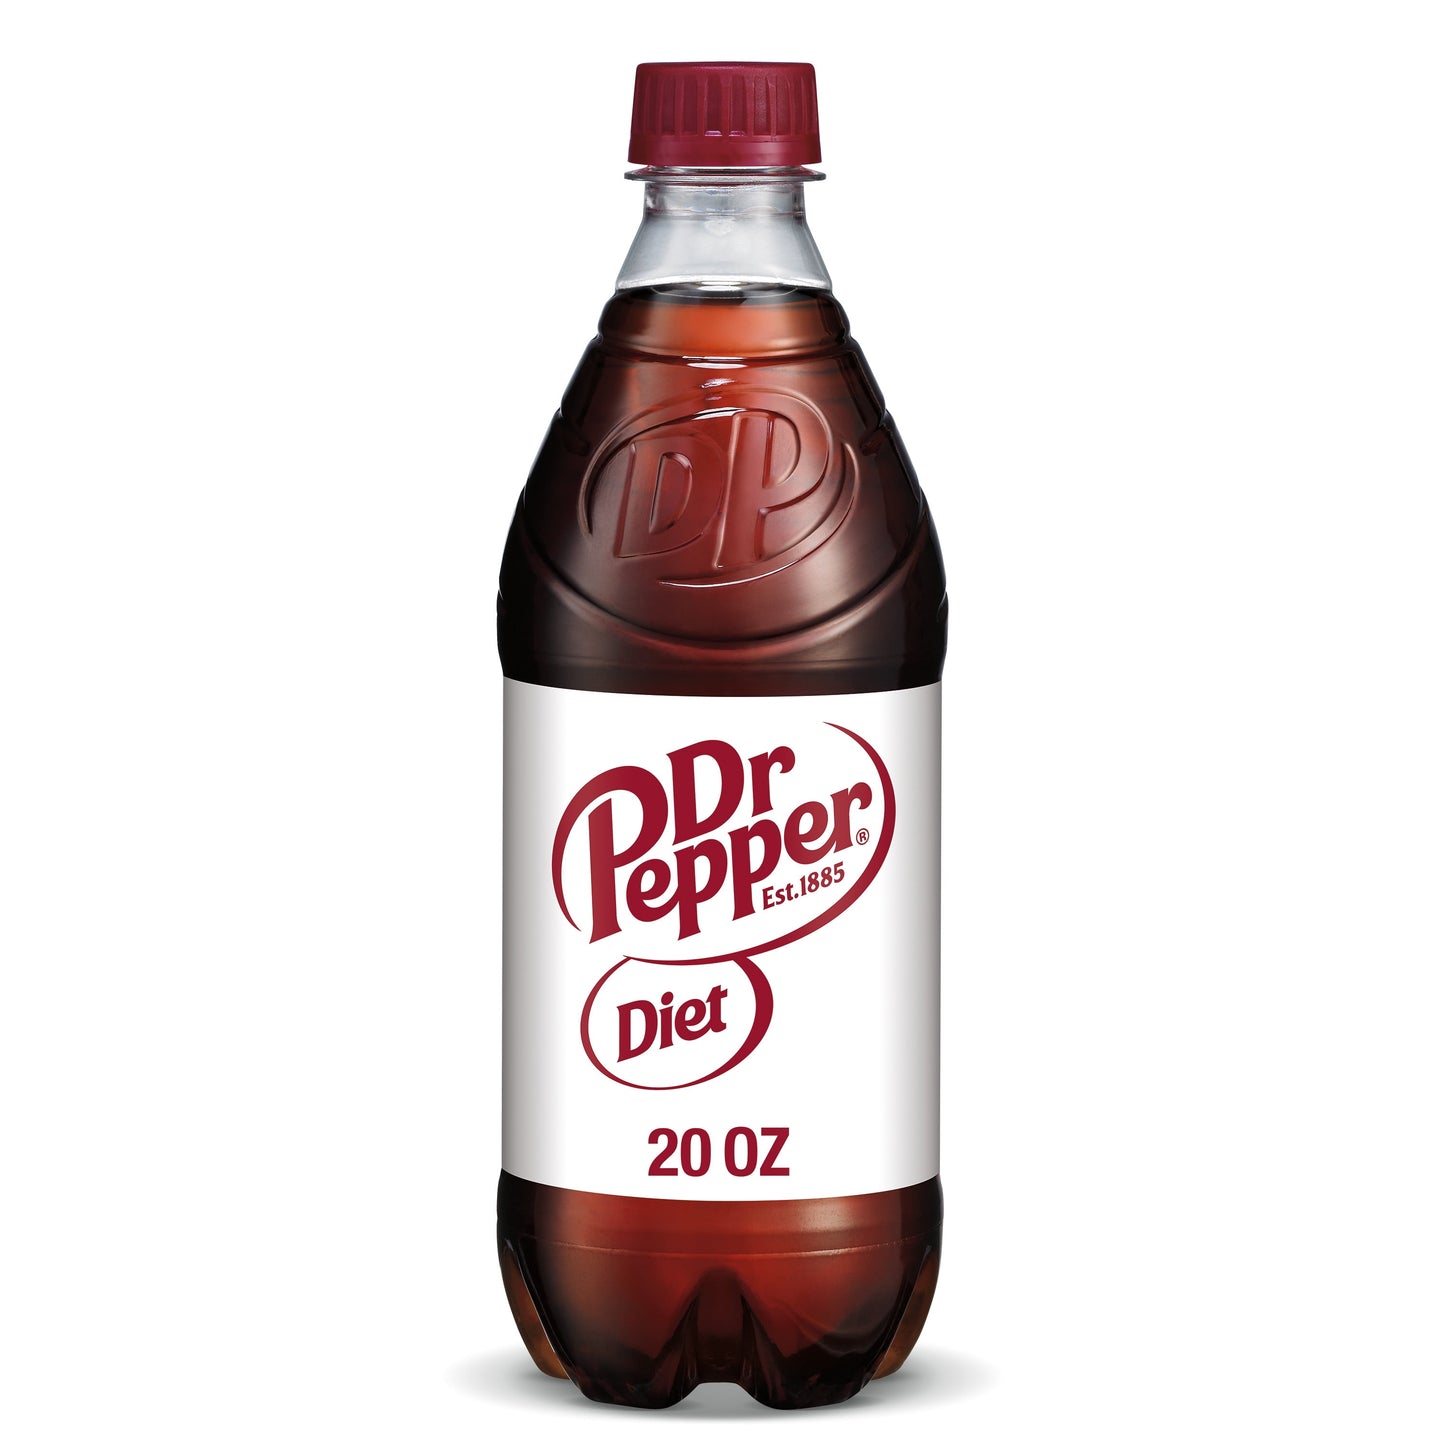 Diet Dr Pepper Soda Pop, 20 fl oz, Bottle